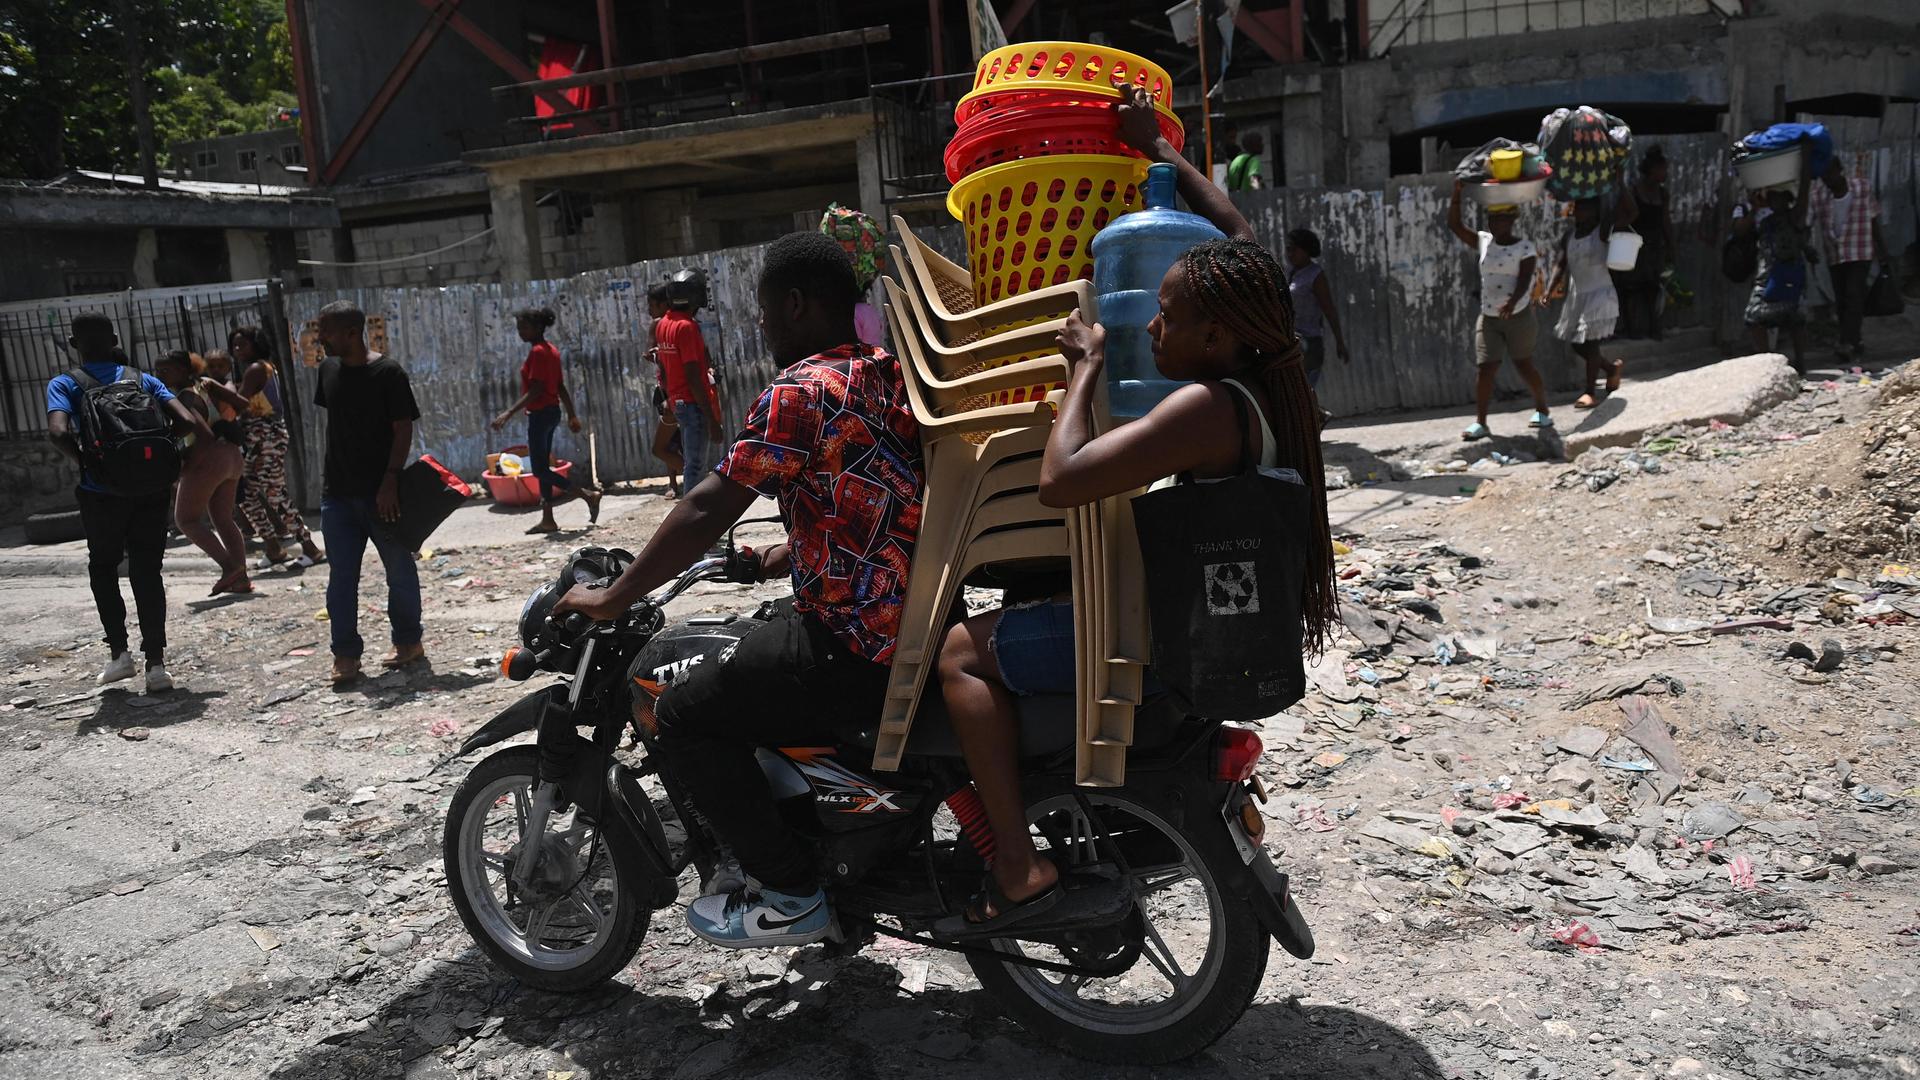 Ein Mann und eine Frau transportieren auf einem Motorrad Stühle, Körbe und eine Gasflasche. Im Hintergrund sind weitere Menschen mit Gepäck zu sehen.